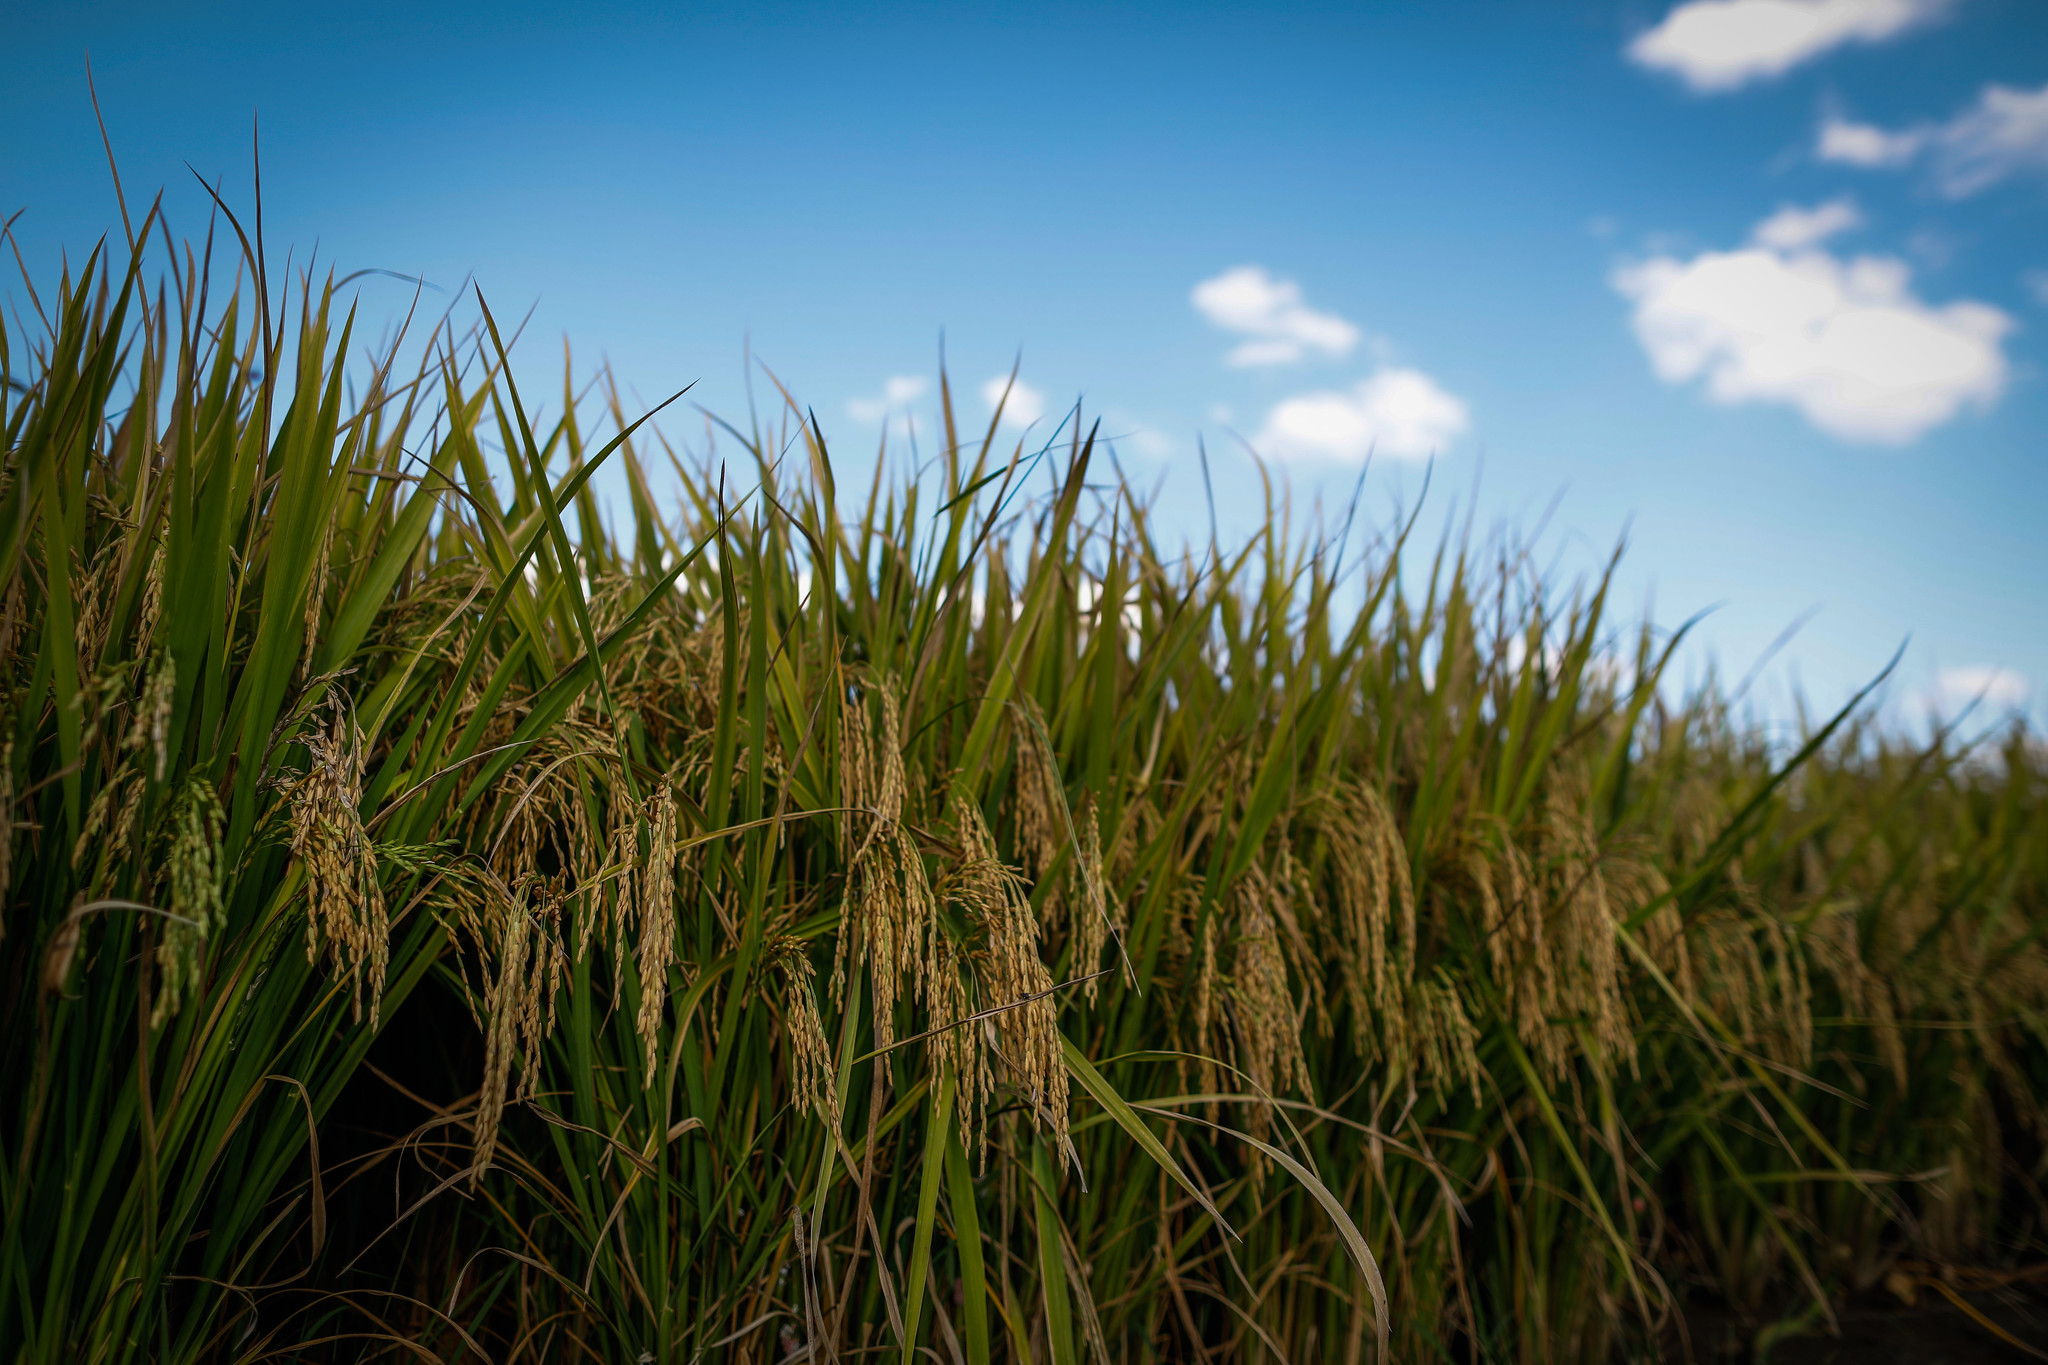 Santa Catarina rice productivity grows 23% in 10 years